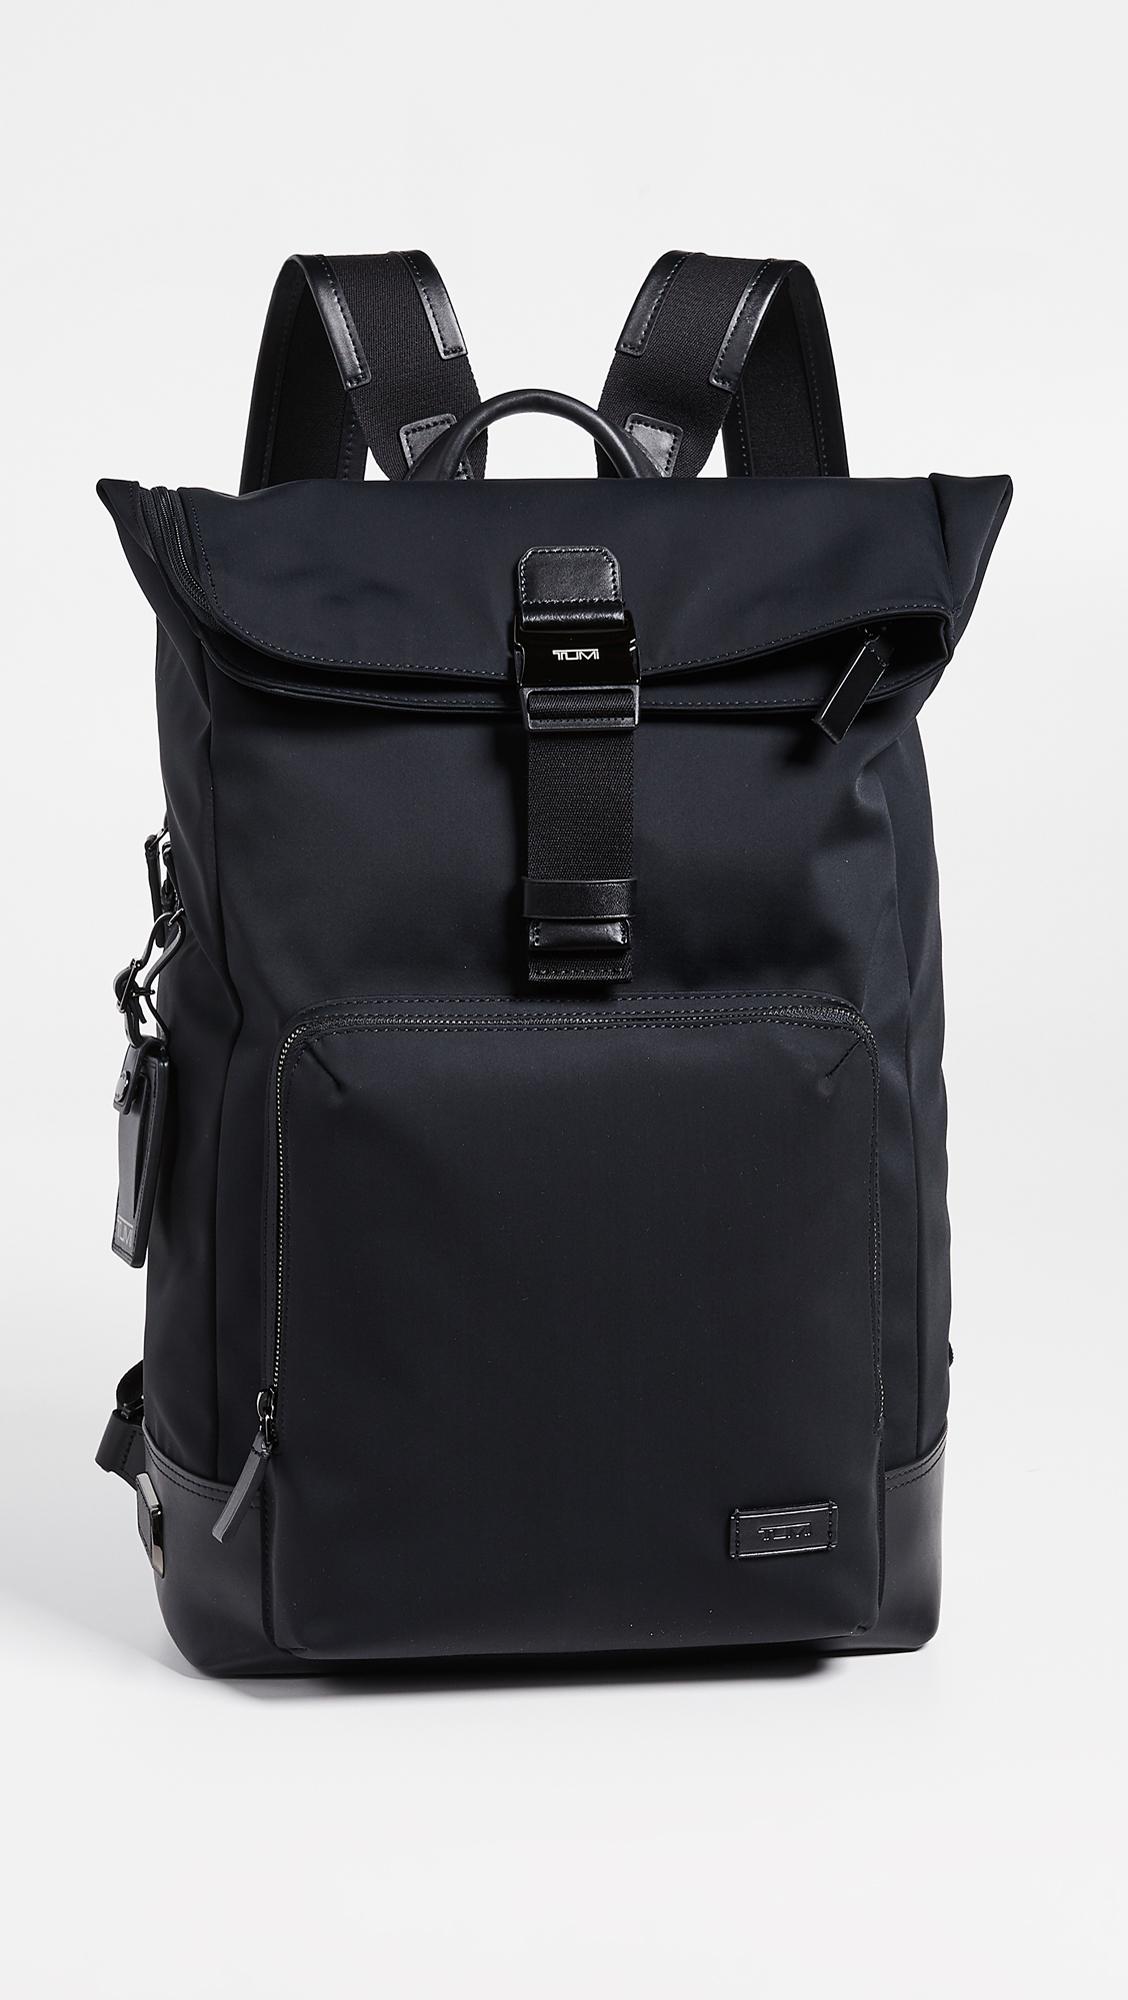 Tumi Leather Harrison Oak Roll Top Backpack in Black for Men - Lyst